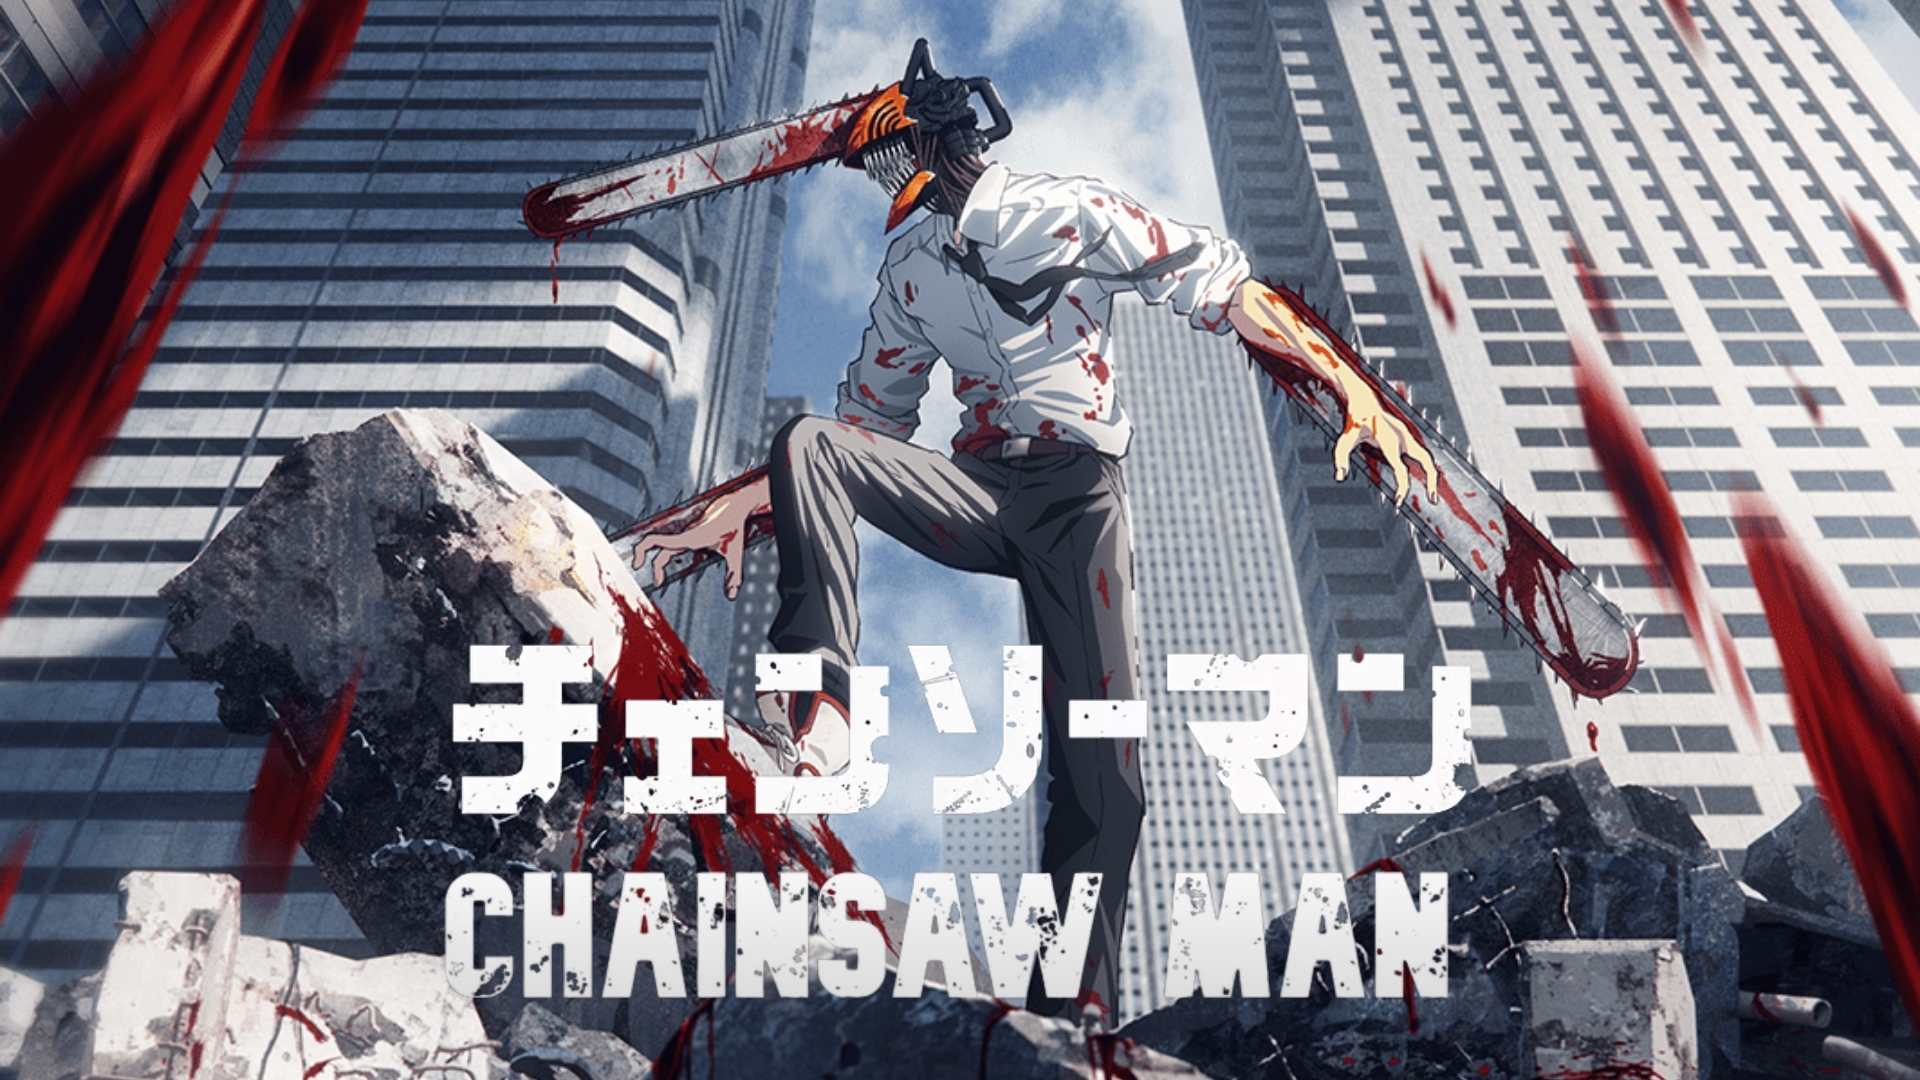 Data de estreia de Chainsaw Man na televisão japonesa é revelada -  Crunchyroll Notícias